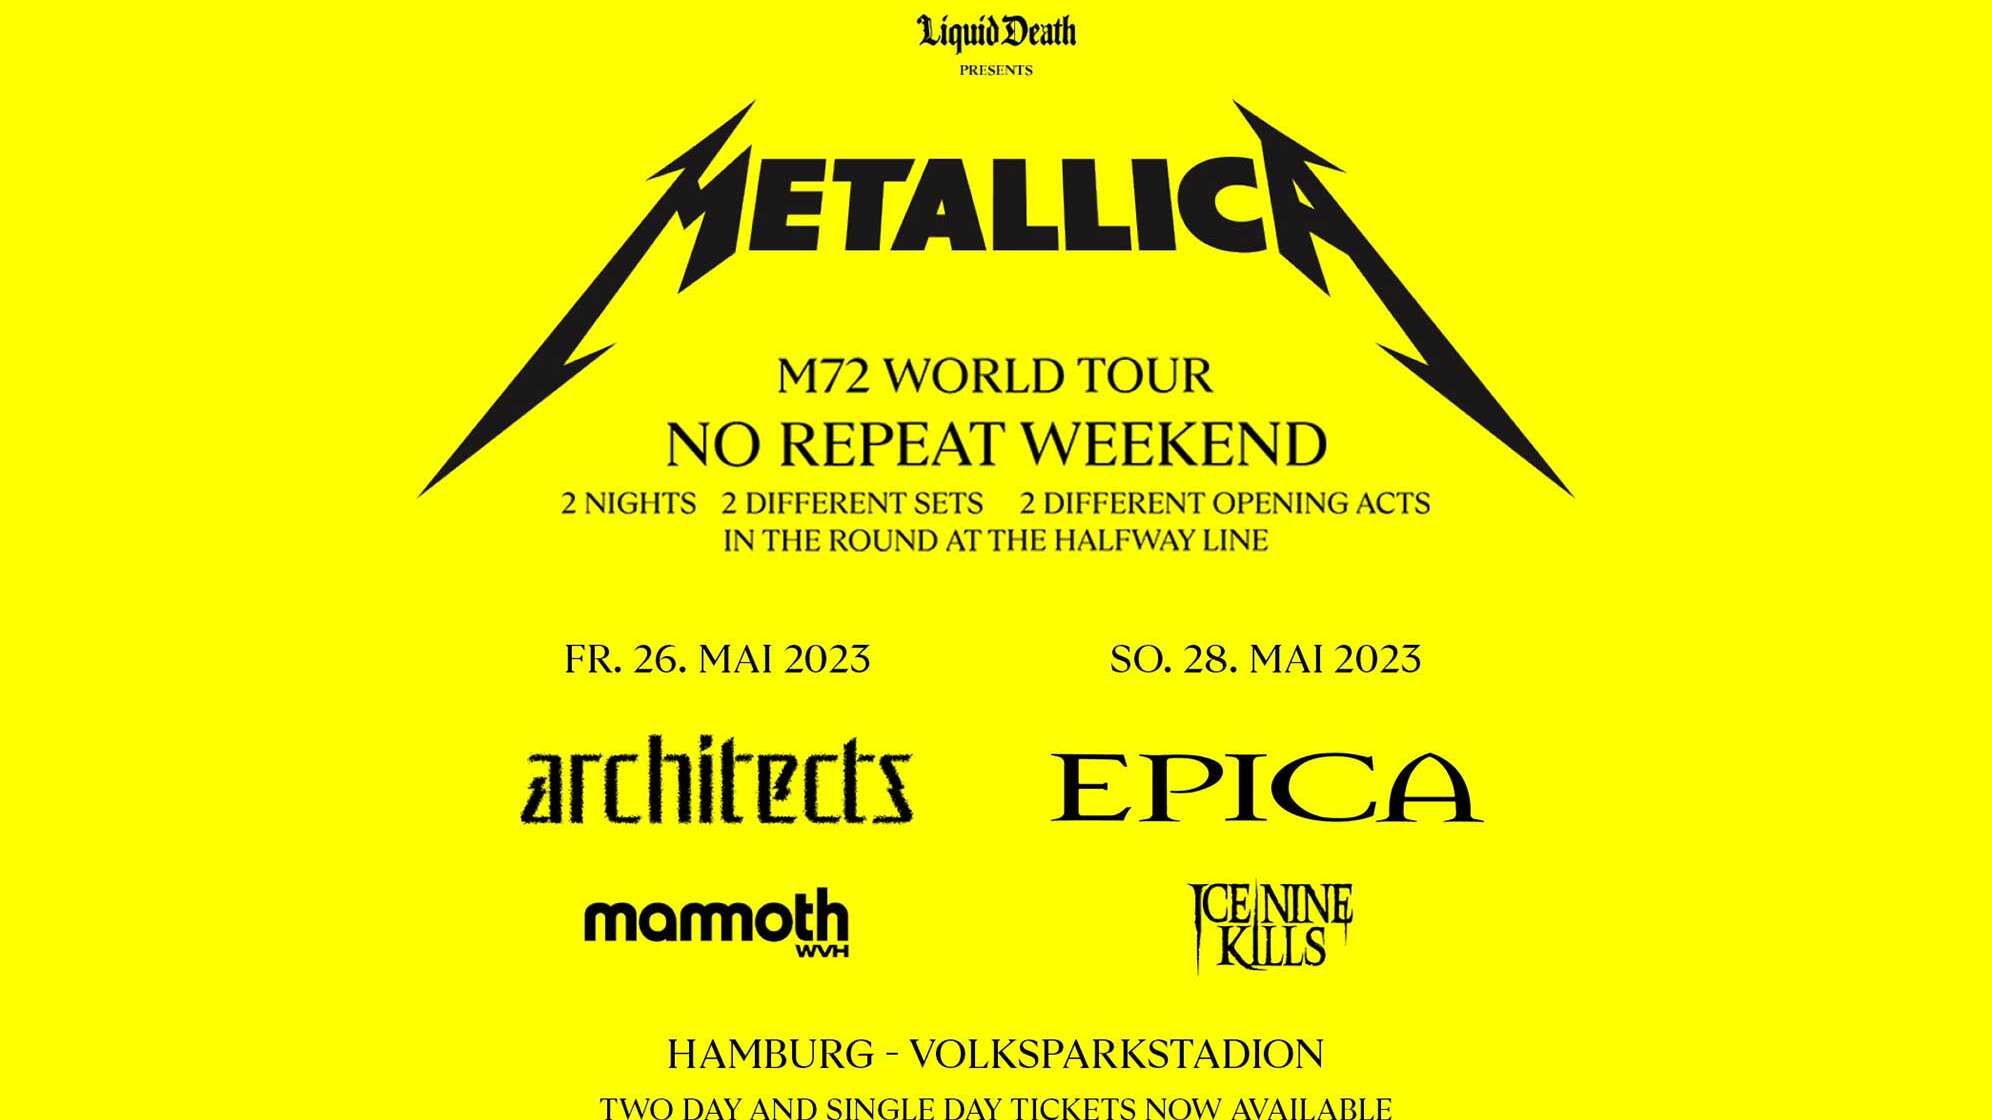 Neues Konzertplakat von Metallica mit Epica als Support